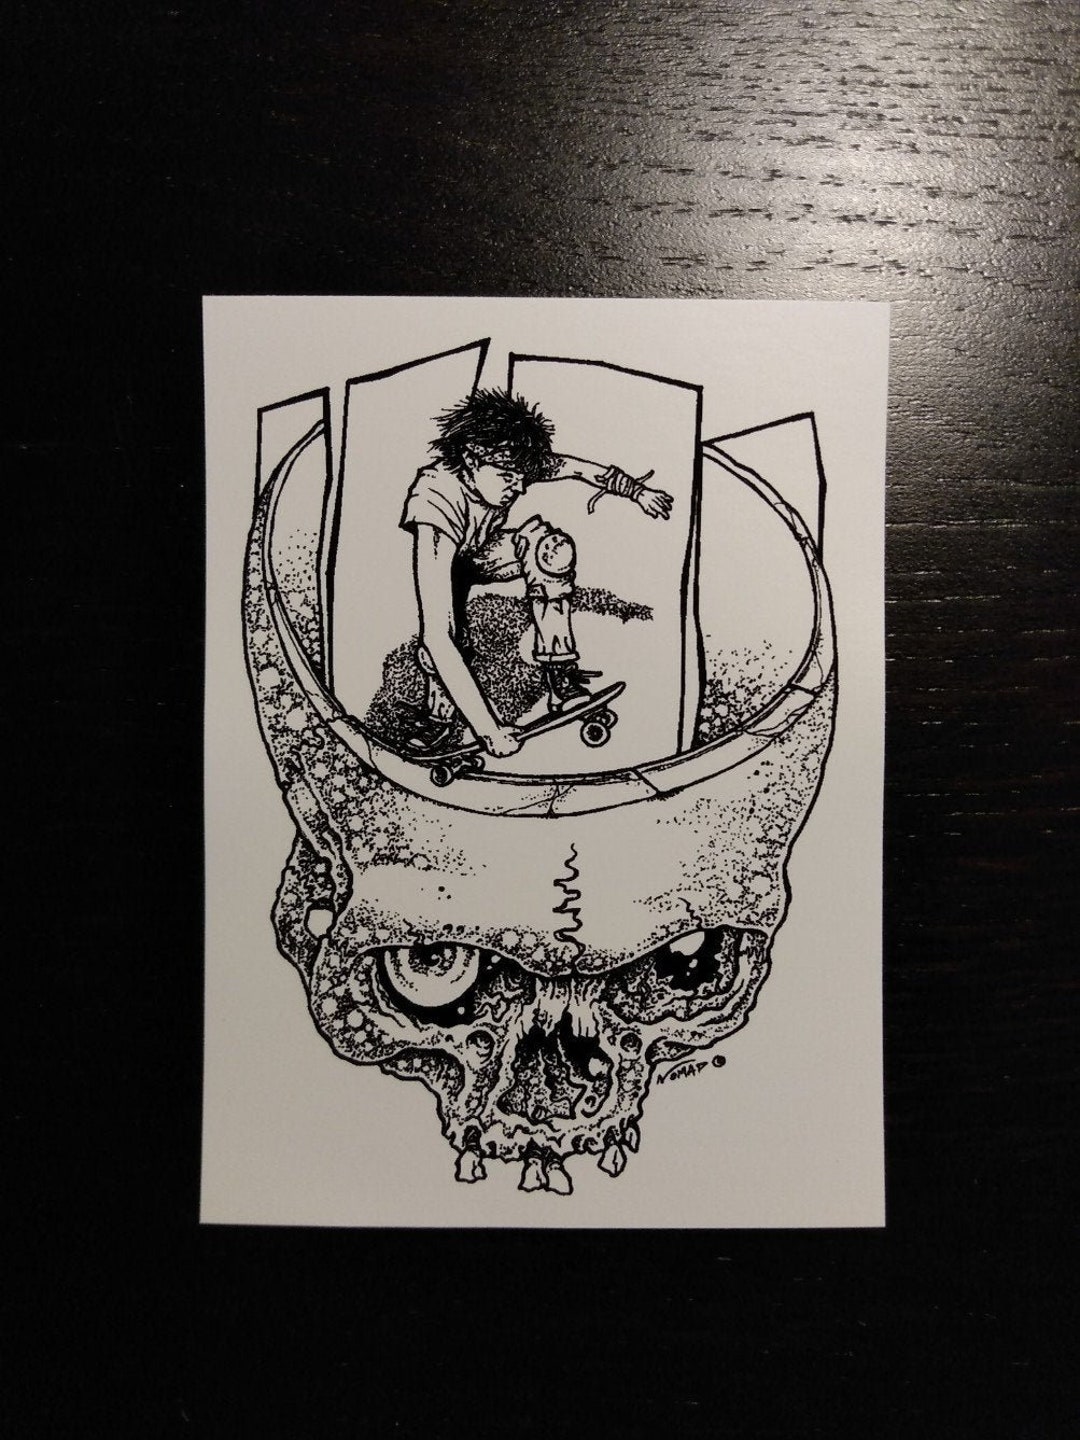 Killer Sans Design Sticker for Sale by Bones Hernandez